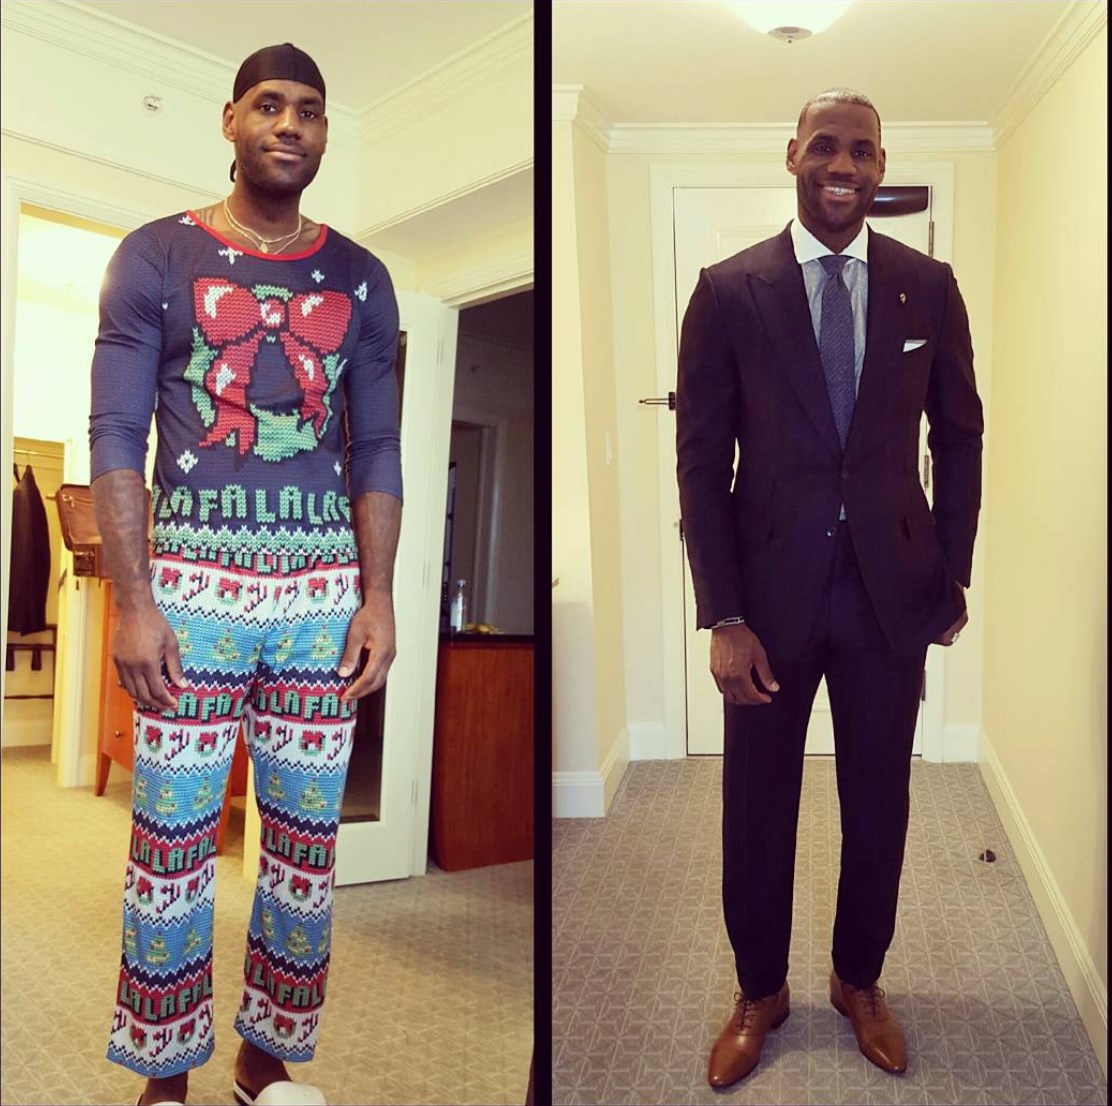 Công chúng mừng rằng, Giáng sinh chỉ xảy ra 1 lần/năm để cầu thủ bầu bóng rổ LeBron James chỉ có thể hủy hoại thời trang một lần duy nhất. Anh chỉ nên mặc đồ thể thao hoặc đóng bộ như ảnh phải mà thôi